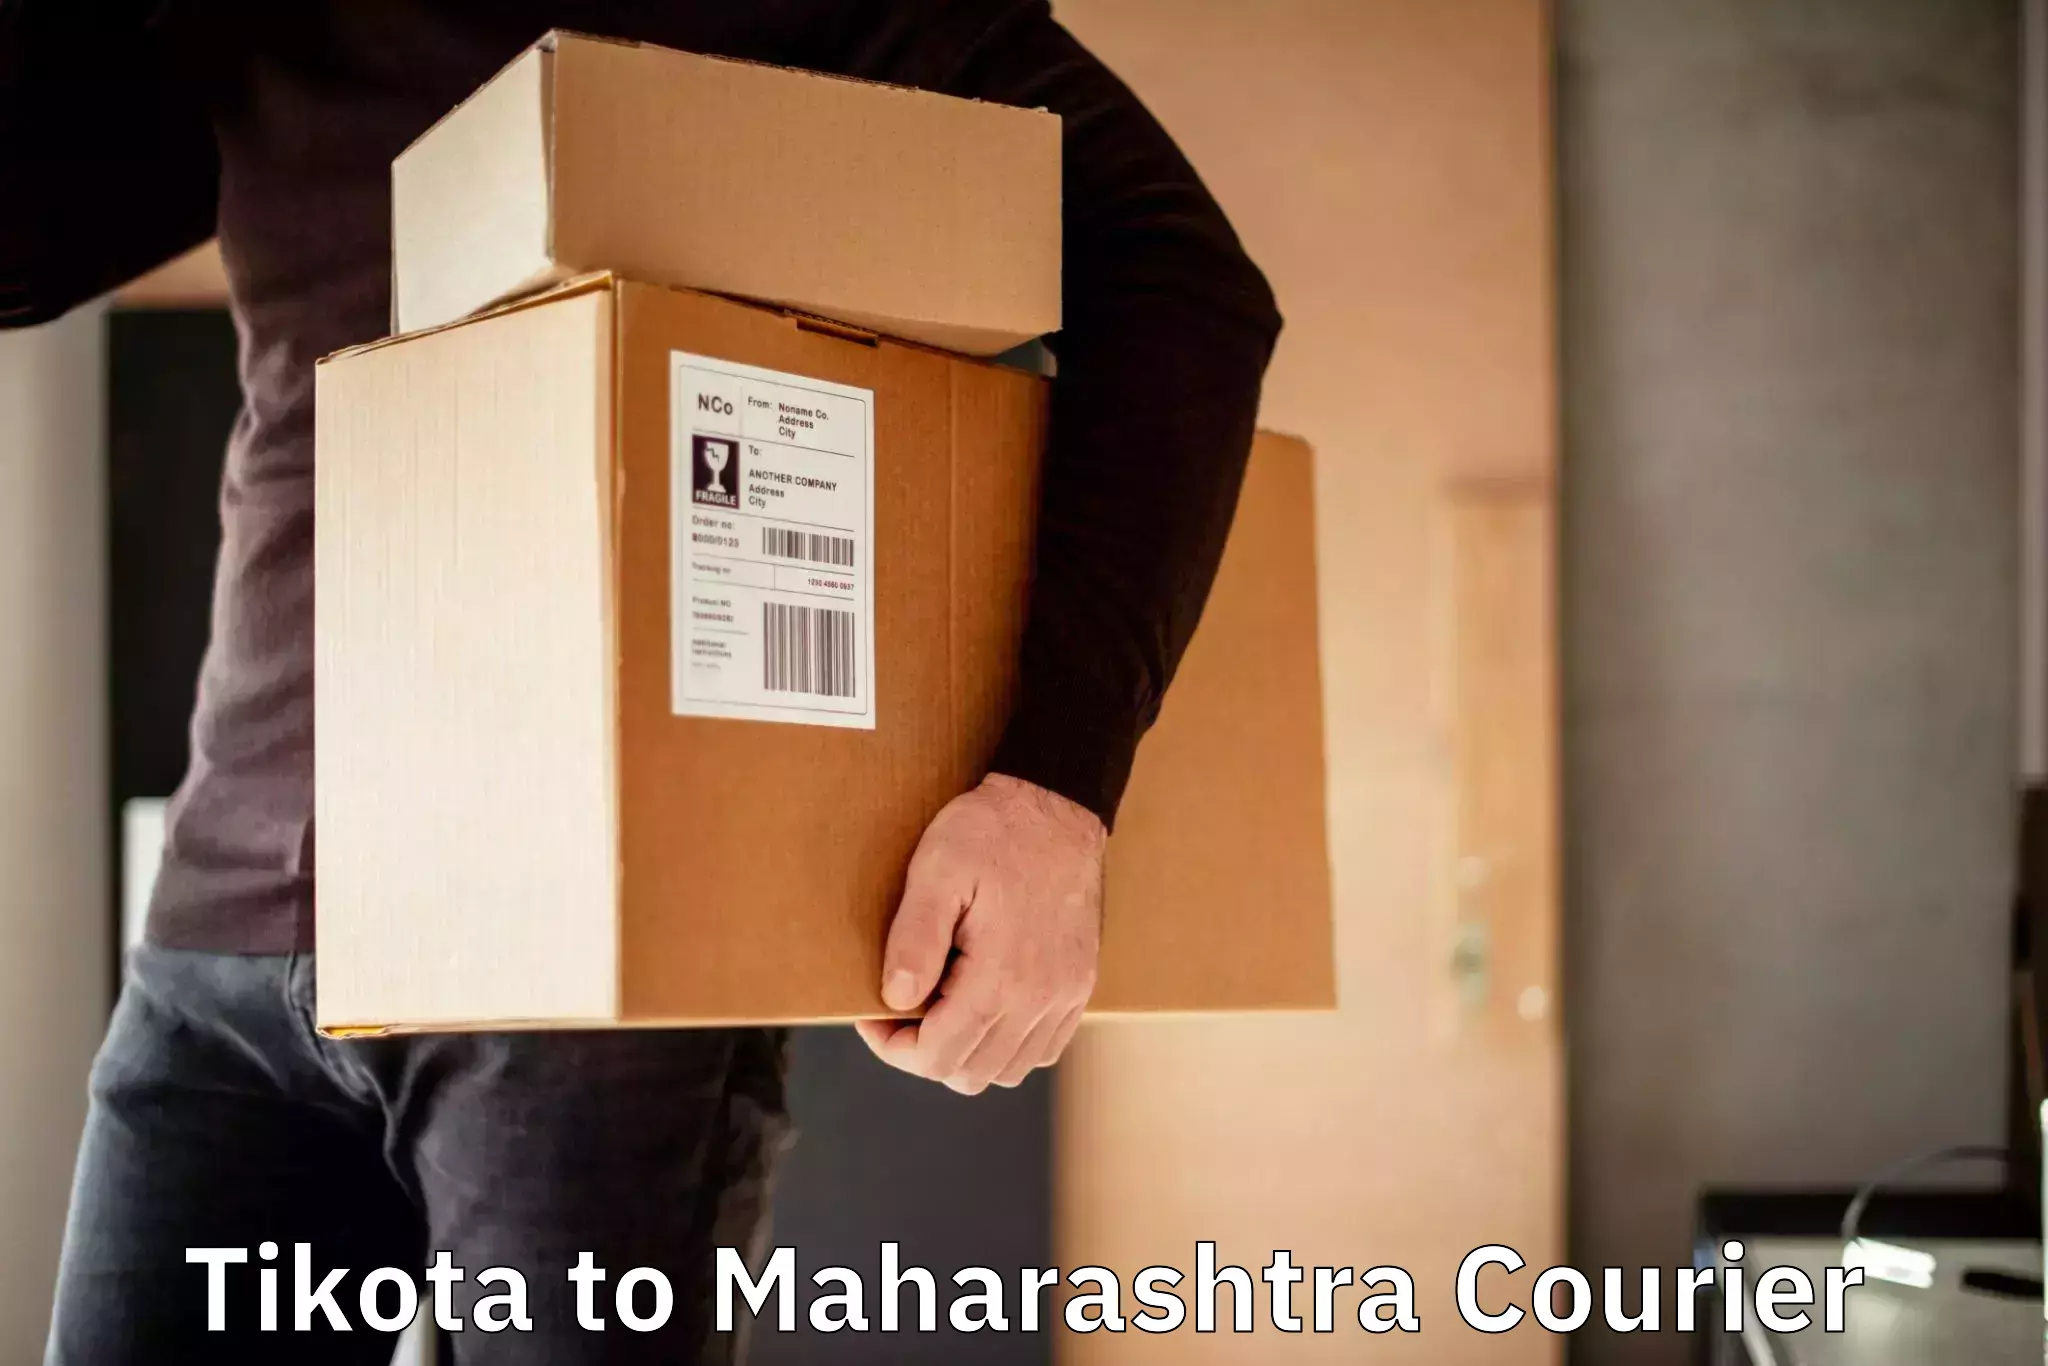 Business delivery service Tikota to Mumbai